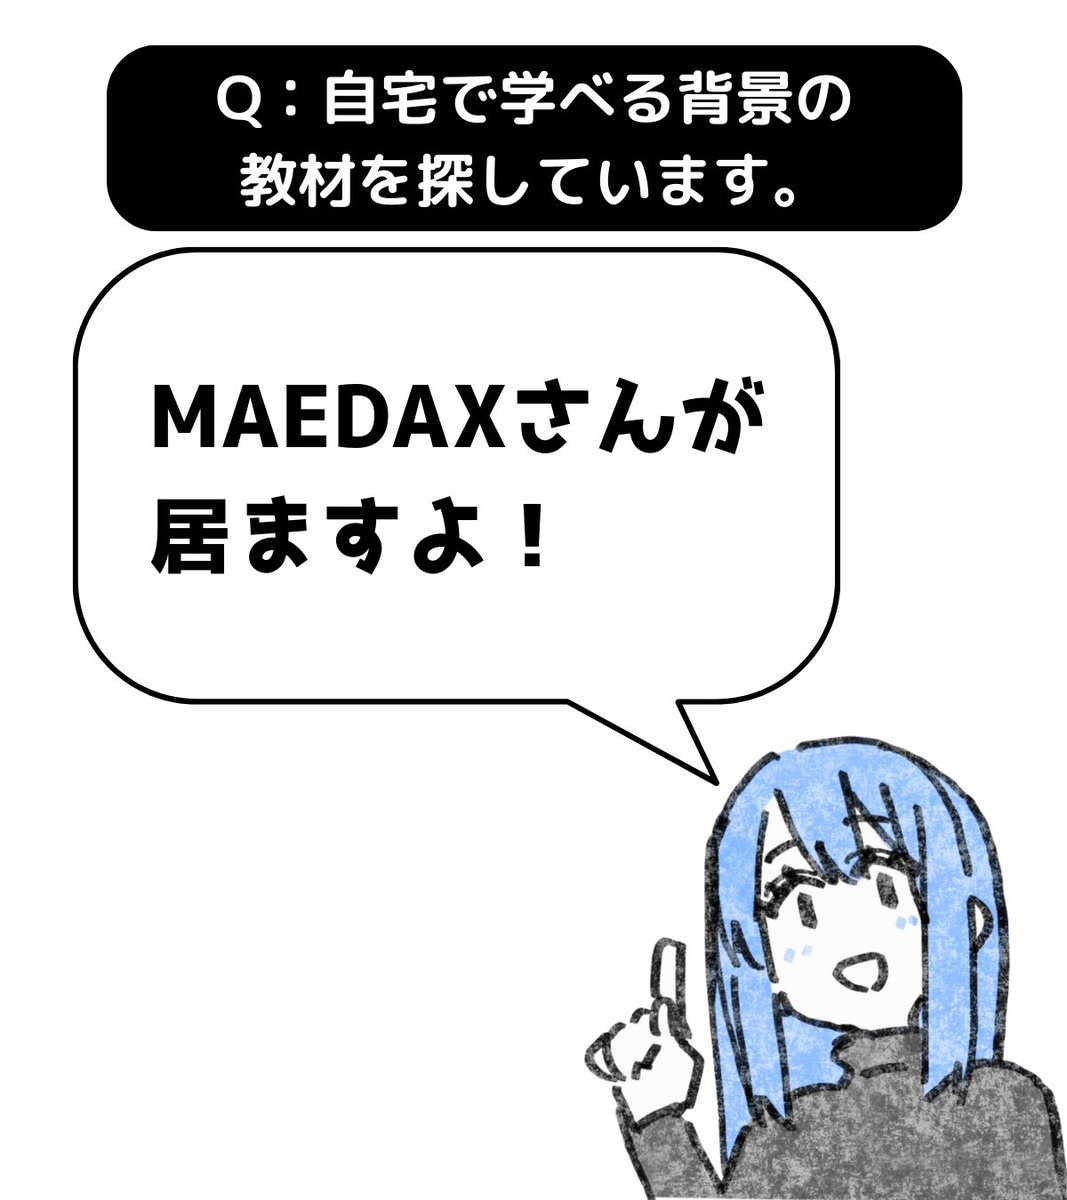 MAEDAXさん(@maedax_x)が居ますよ。
漫画背景に特化したオンライン講座をやってるのでチェックしてみて下さい。 